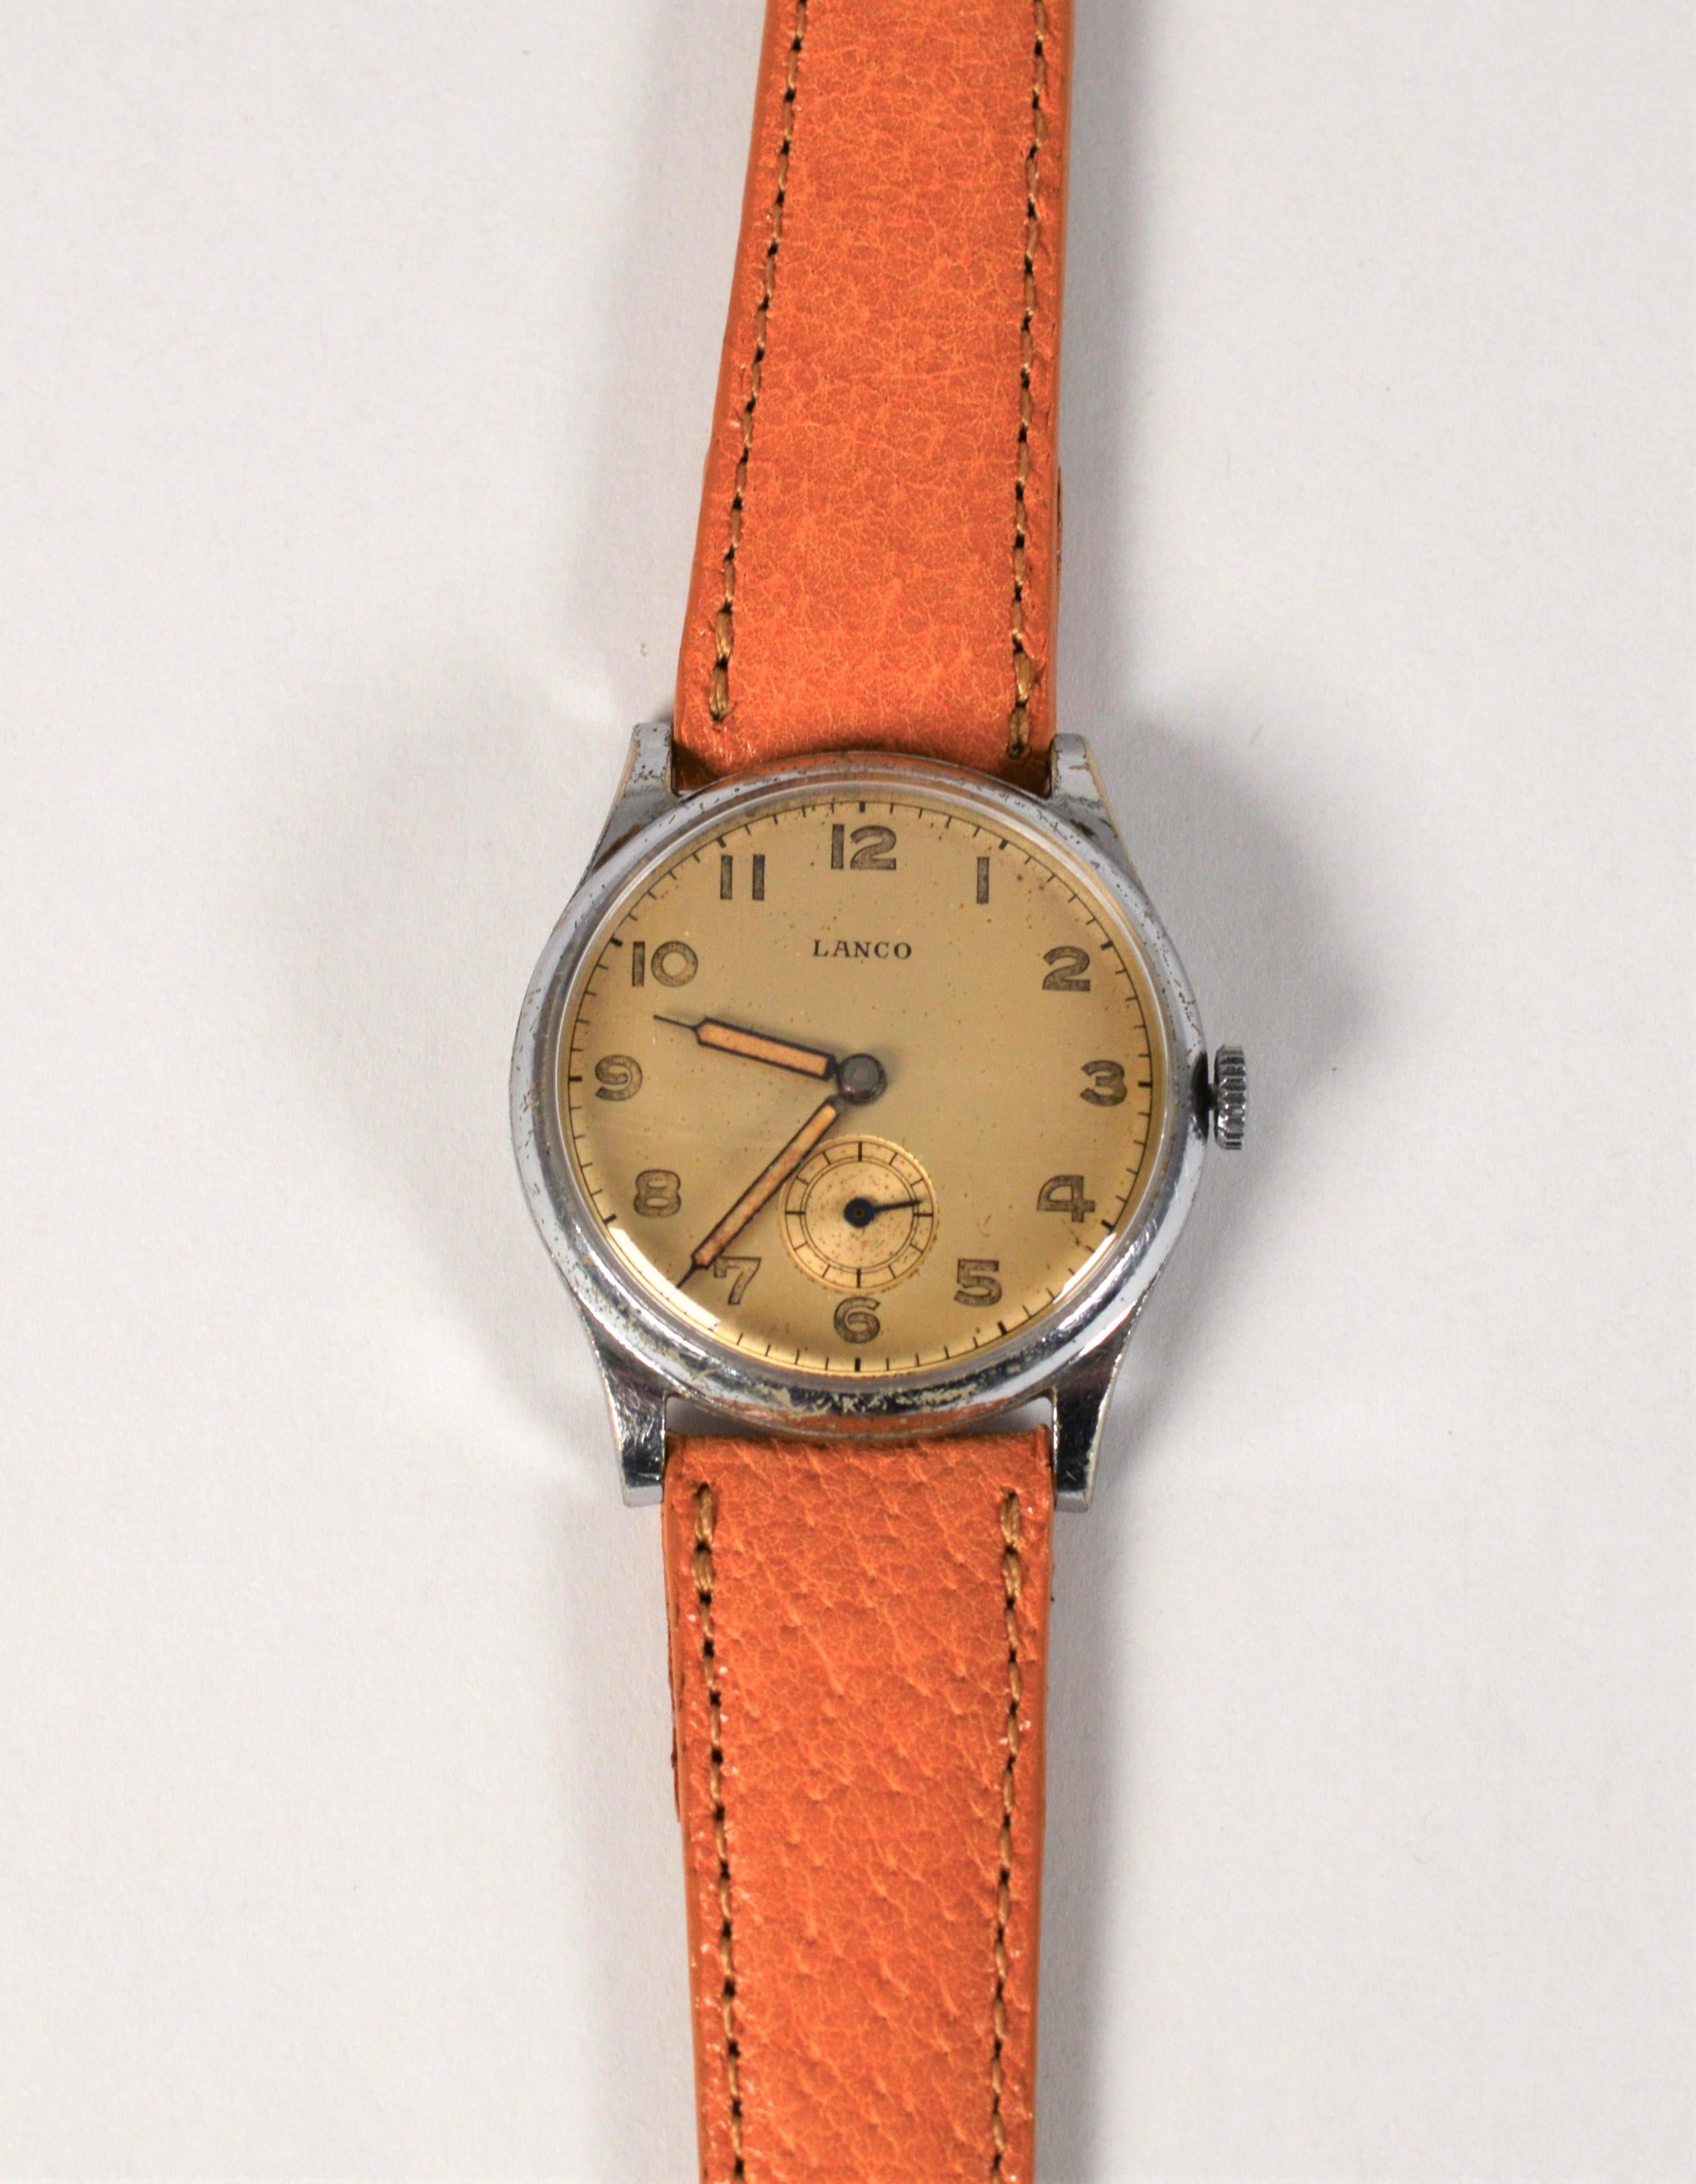 Vintage mit Charakter, diese Lanco Edelstahl-Armbanduhr ist gut erhalten und war beliebt bei der deutschen Armee während des Zweiten Weltkriegs. Der Zeitmesser verfügt über ein satiniertes, goldfarbenes Zifferblatt mit gut lesbaren arabischen